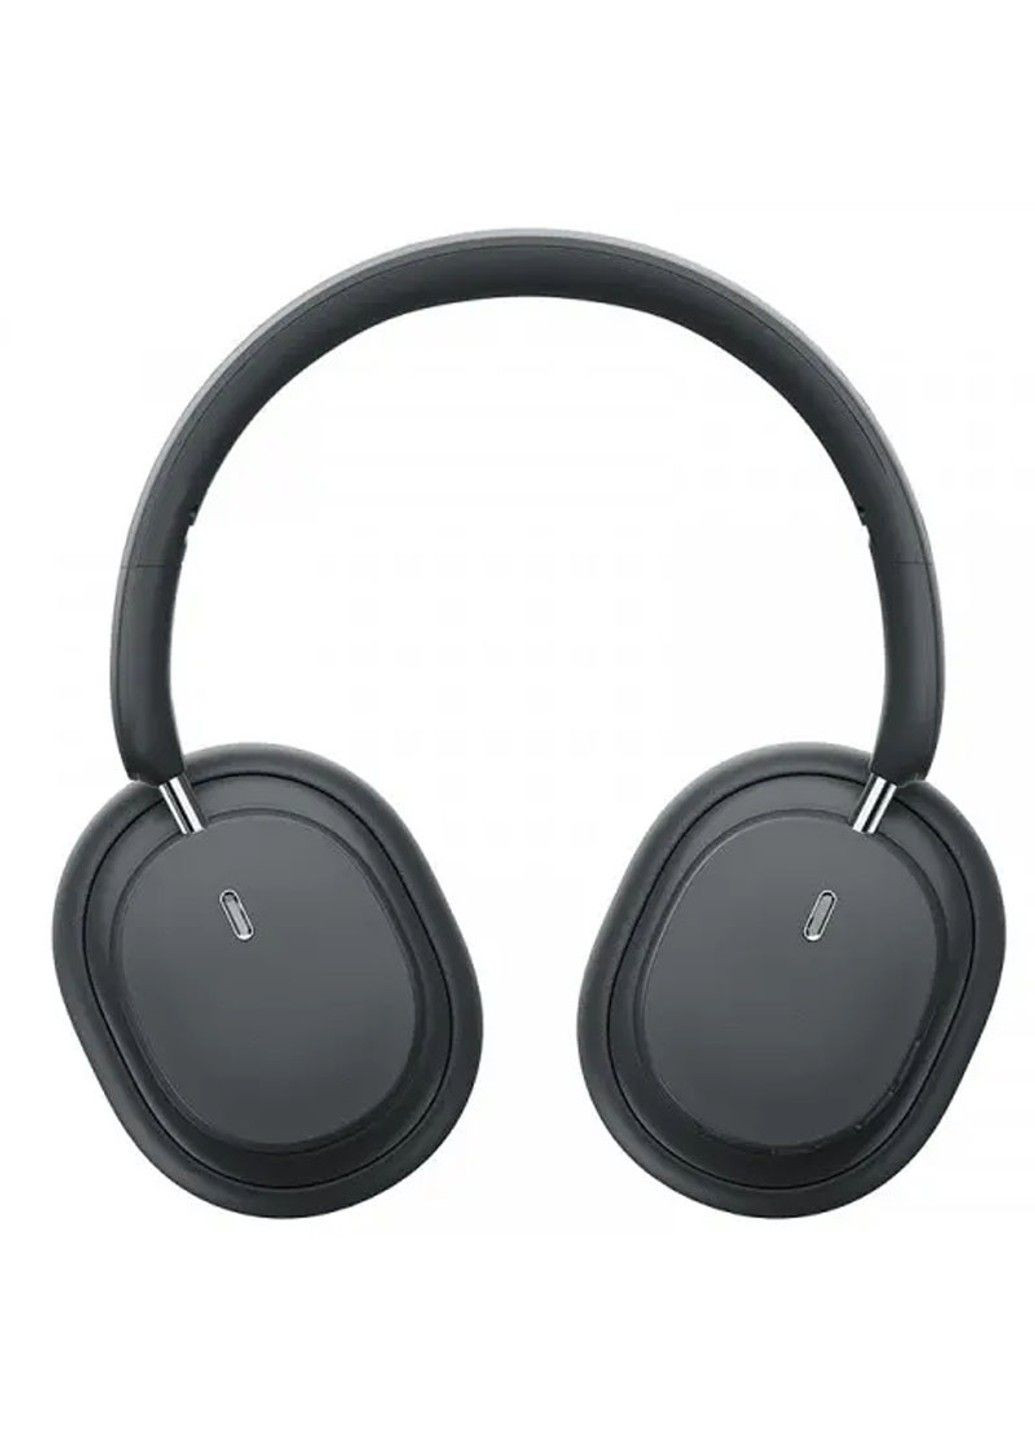 Уценка Накладные беспроводные наушники Bowie D05 Wireless Headphones (NGTD02021) Baseus (291880091)